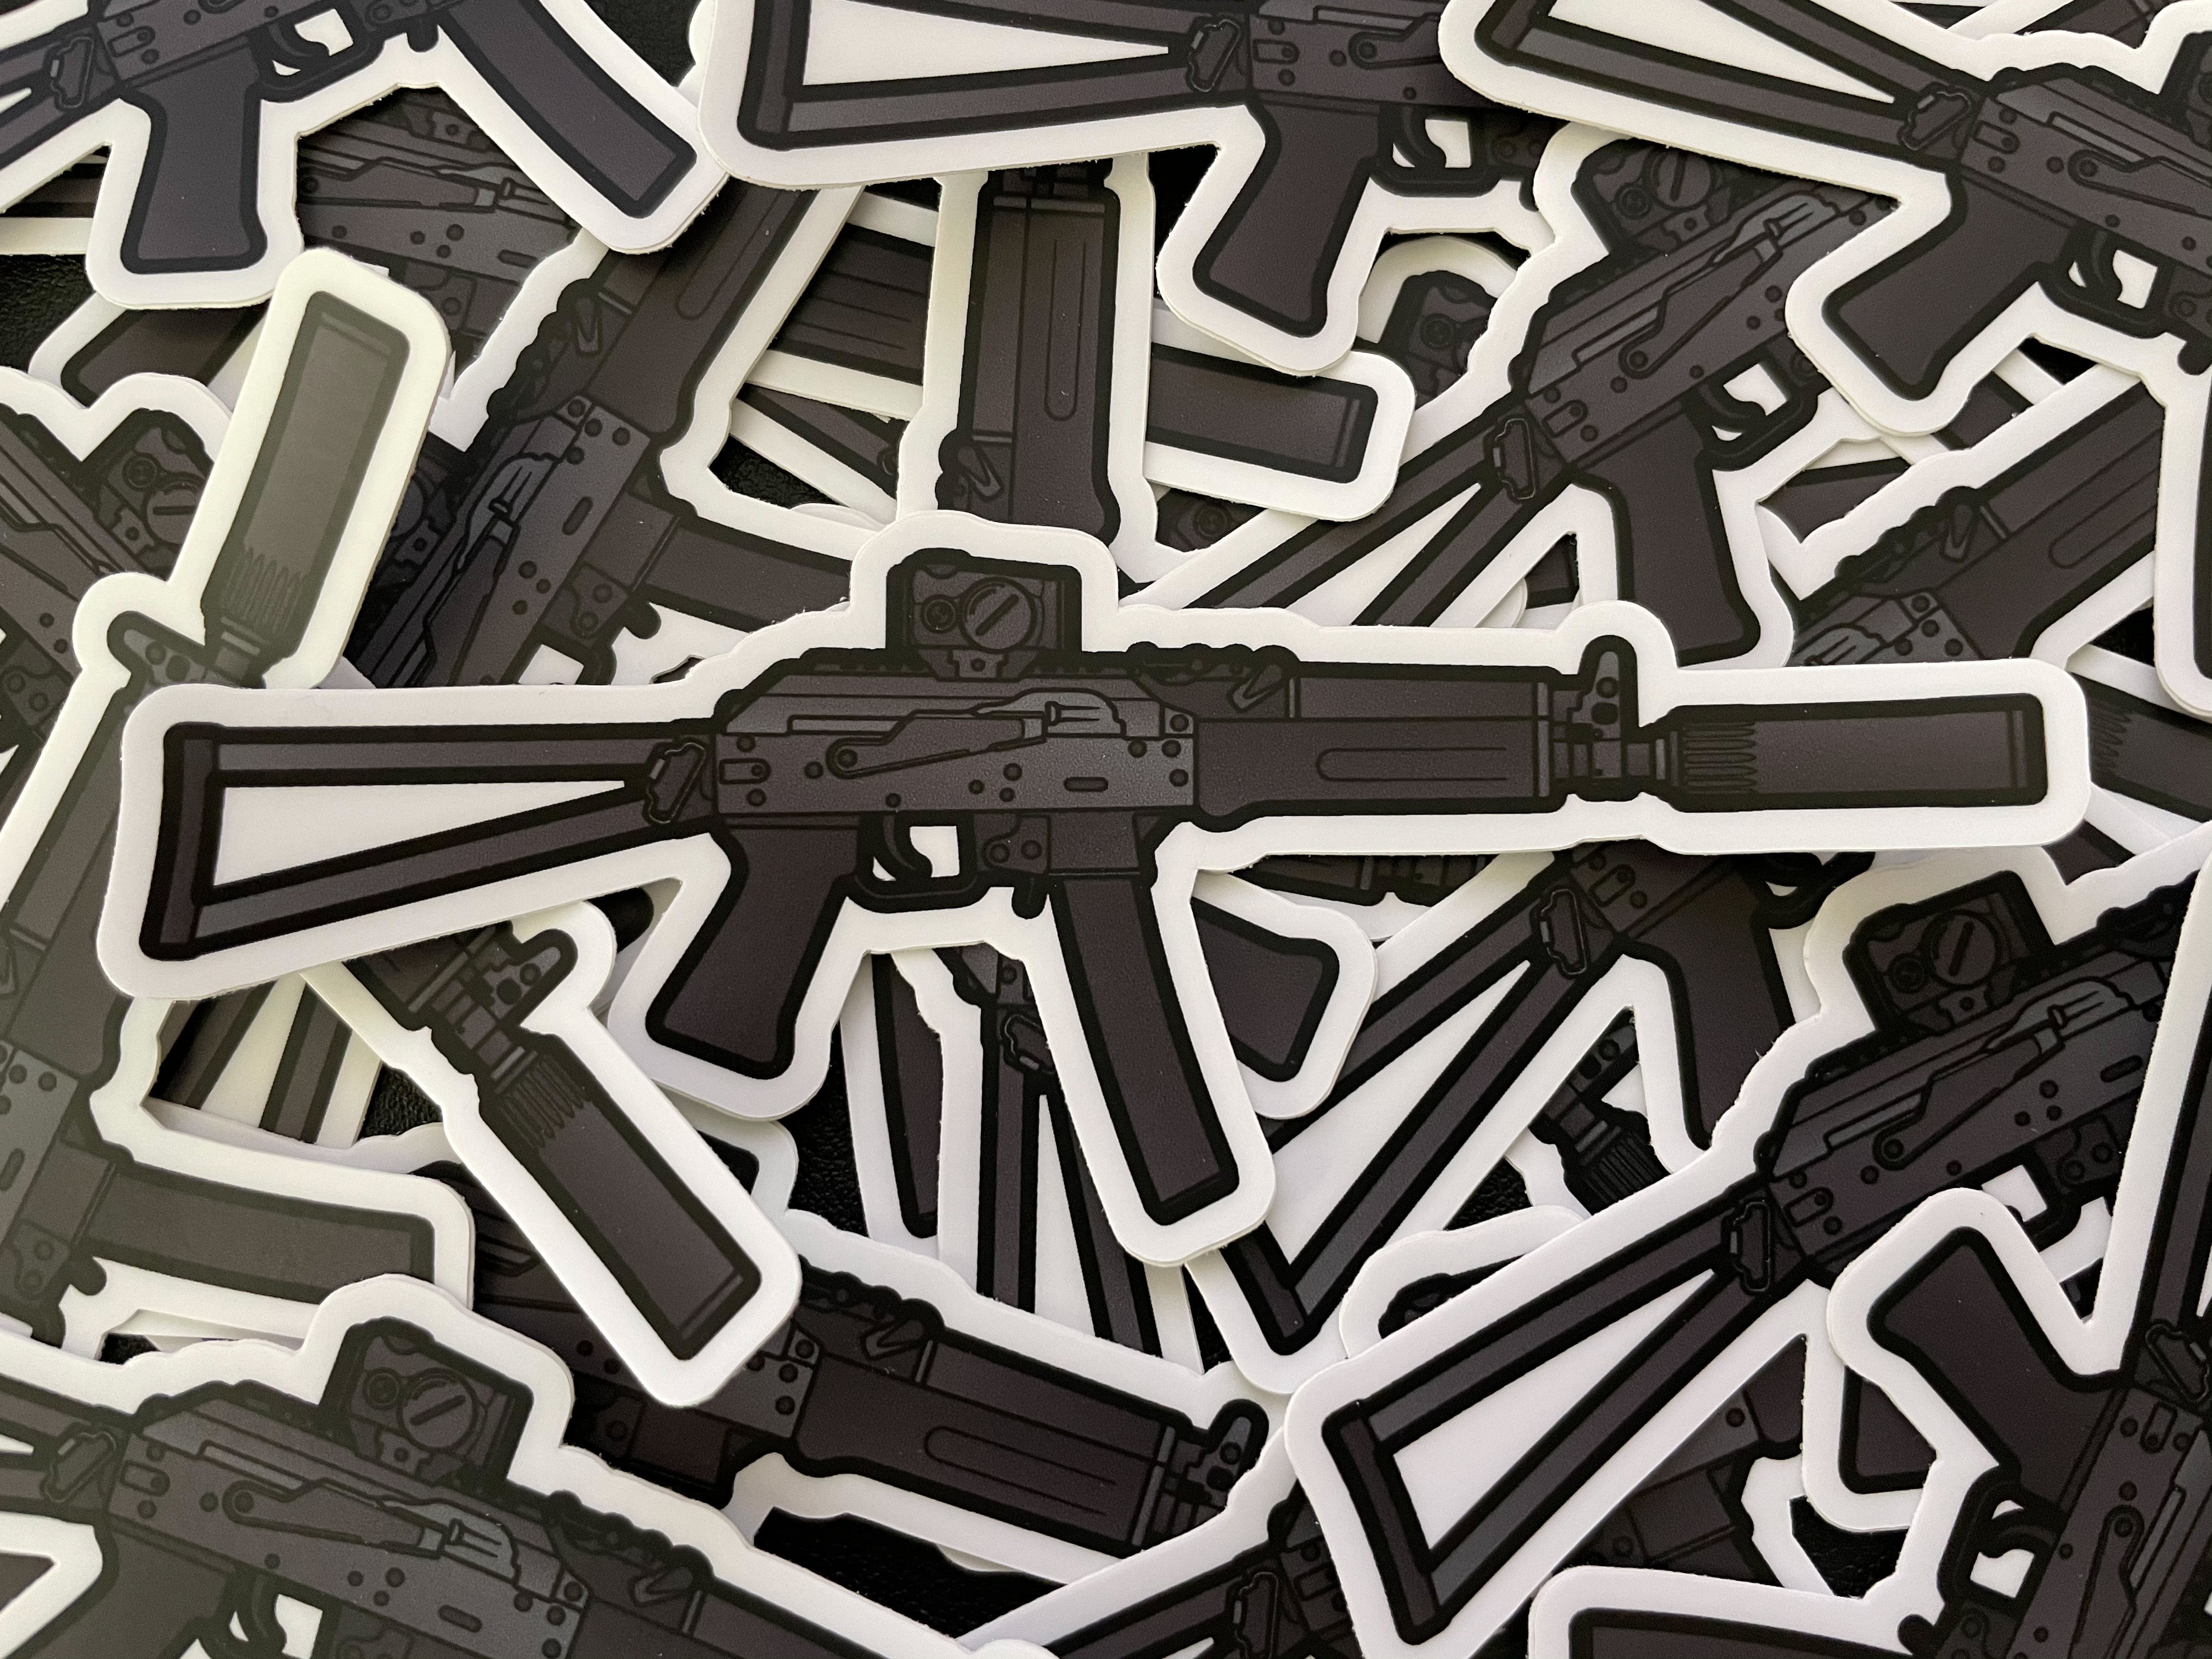 Goon Tape AK Sticker